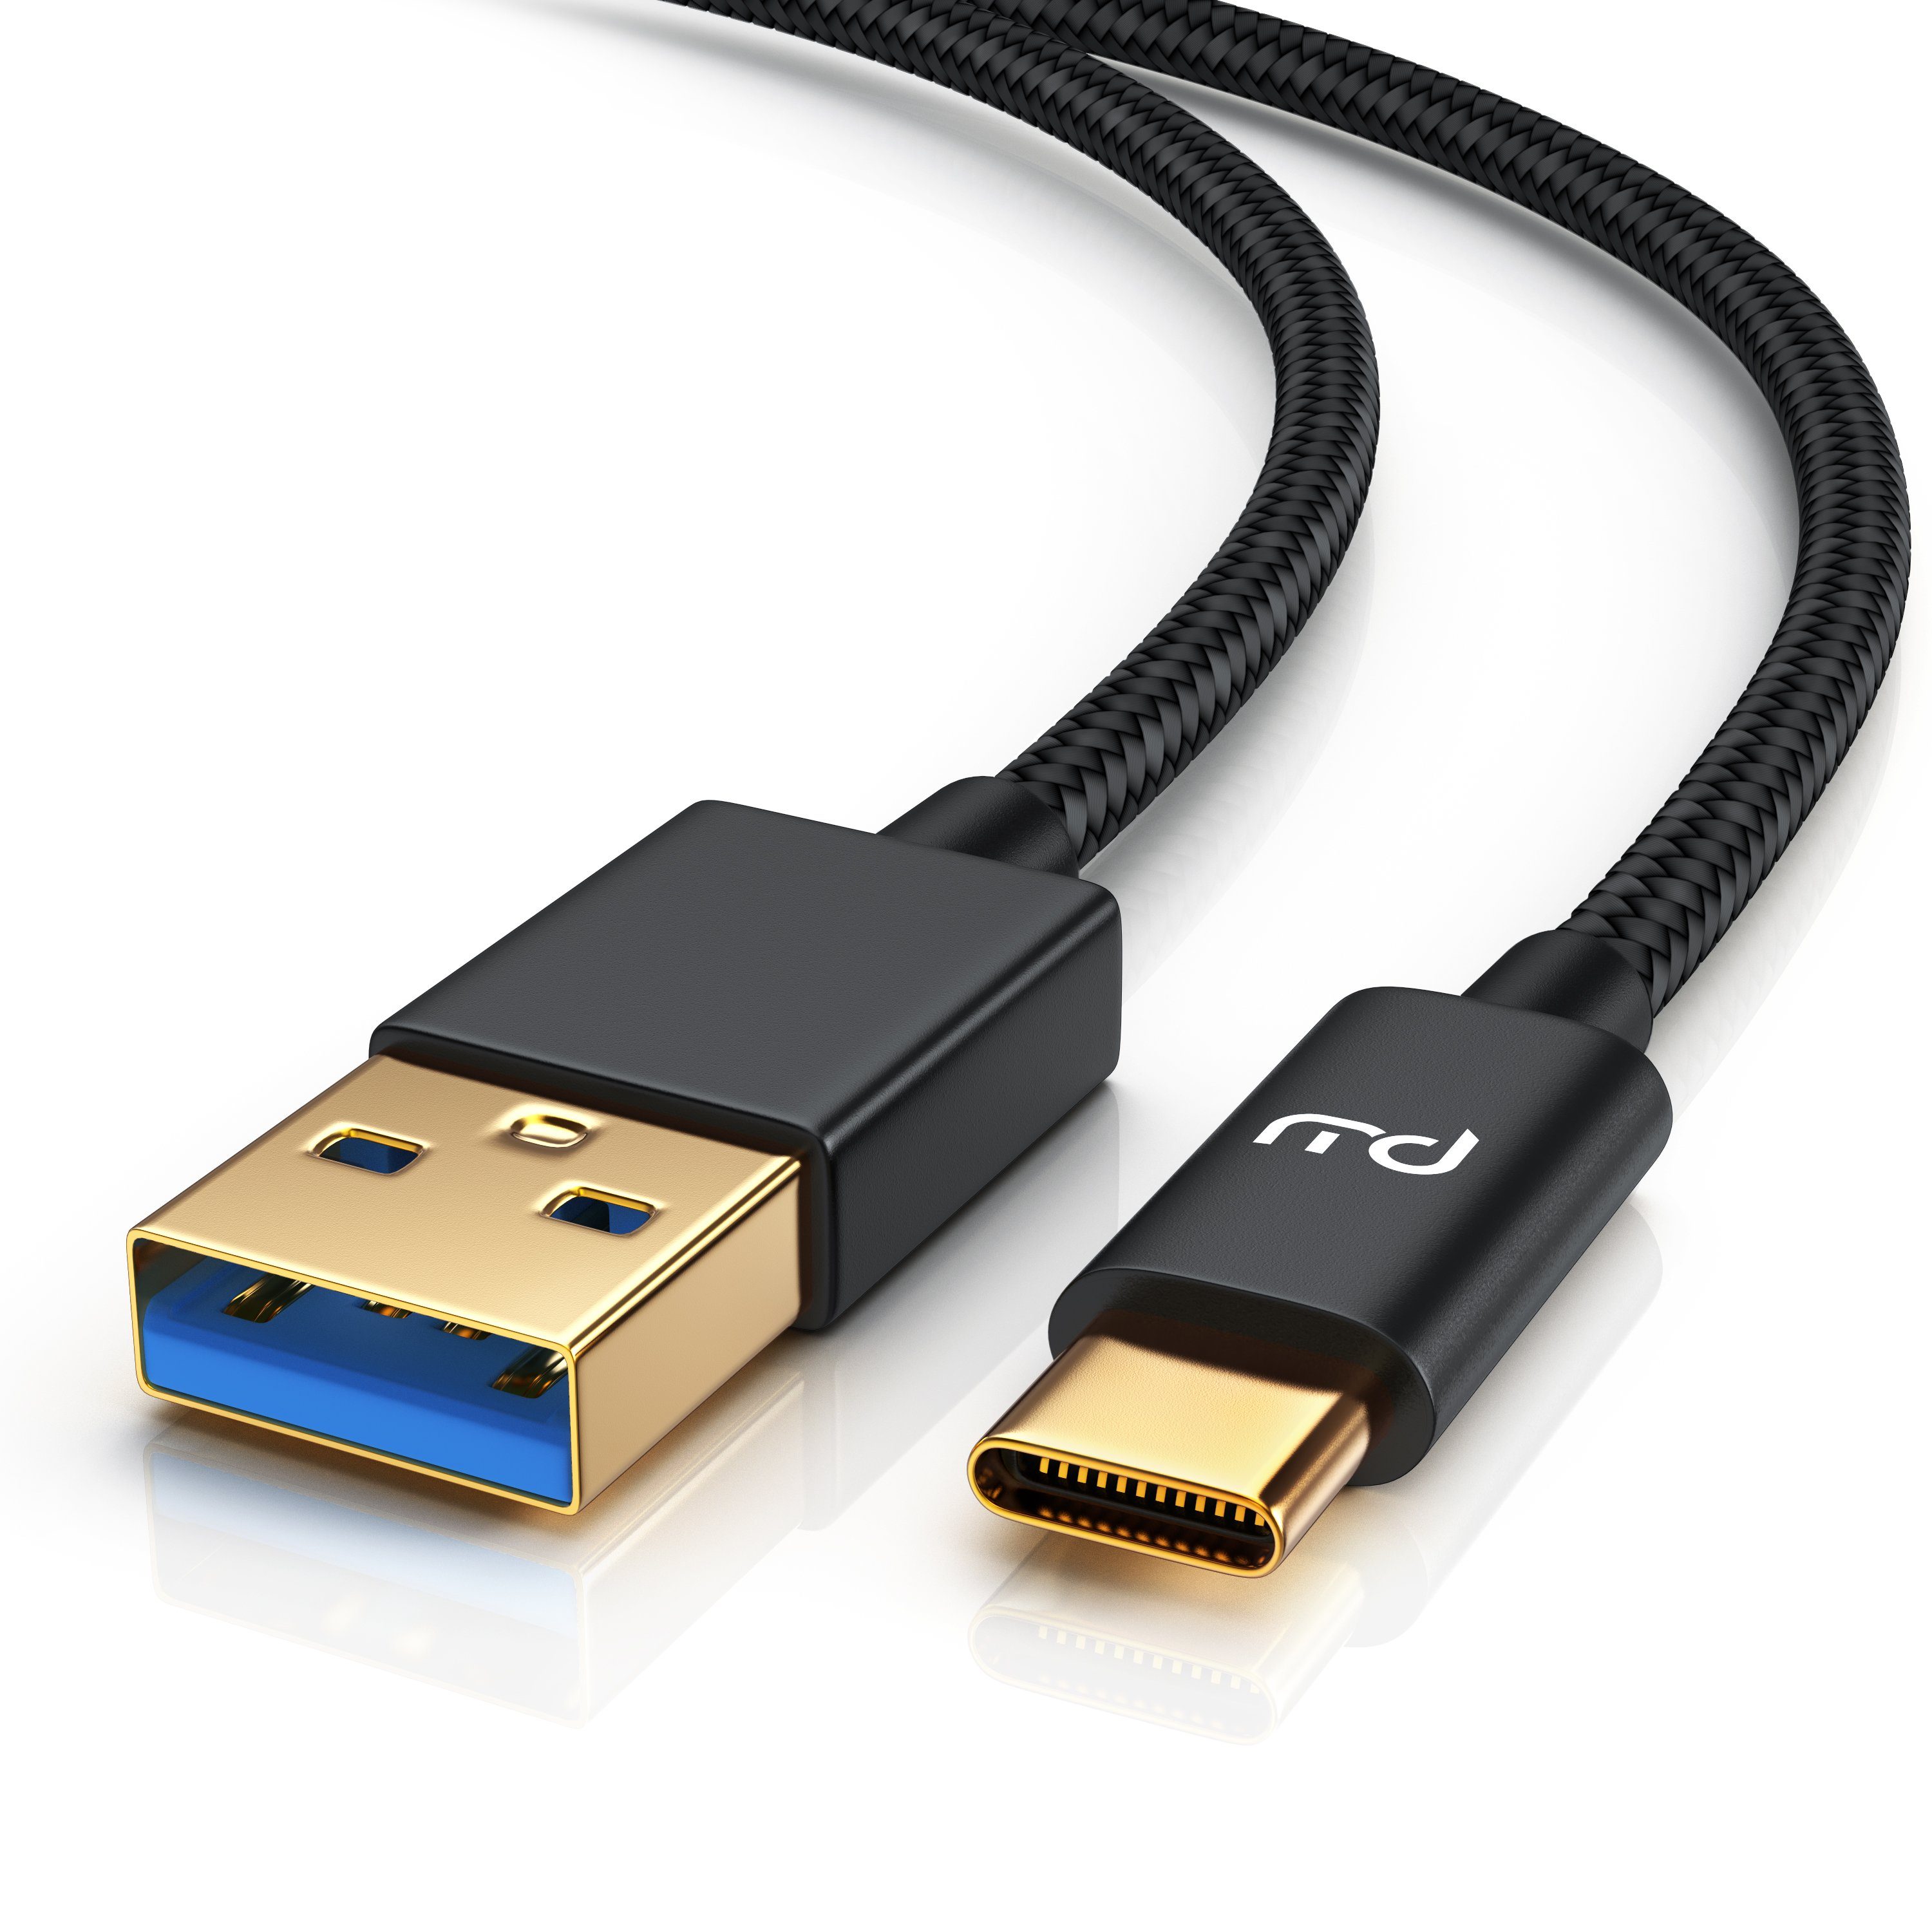 Primewire USB-Kabel, USB Typ C; USB, USB Typ C Stecker; USB 3.0 Typ A  Stecker (50 cm), Premium USB 3.1 Ladekabel - Datenkabel - Nylonmantel -  3-Fach geschirmt - bidirektional online kaufen | OTTO